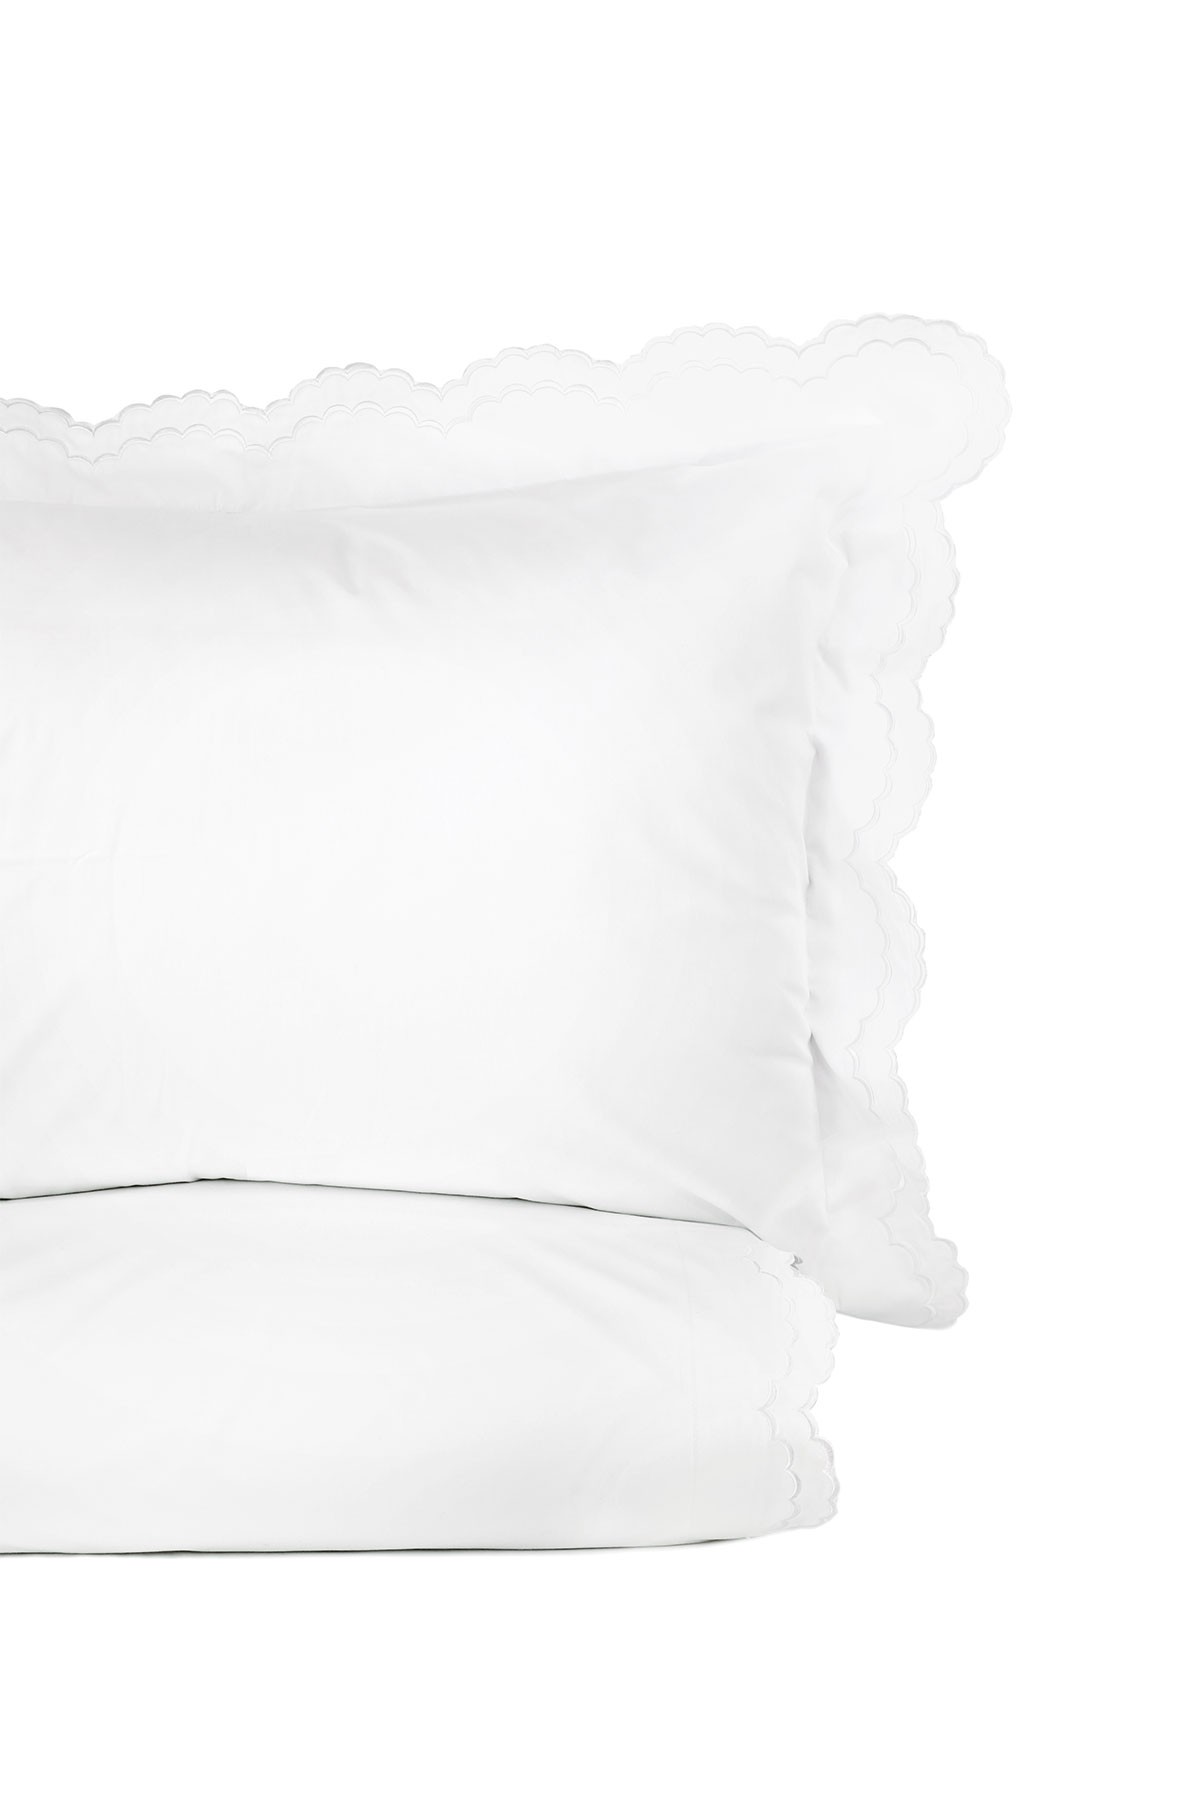 Комплект пуховых одеял King 300 с двойной зубчатой вышивкой из 3 частей - Белый Melange Home